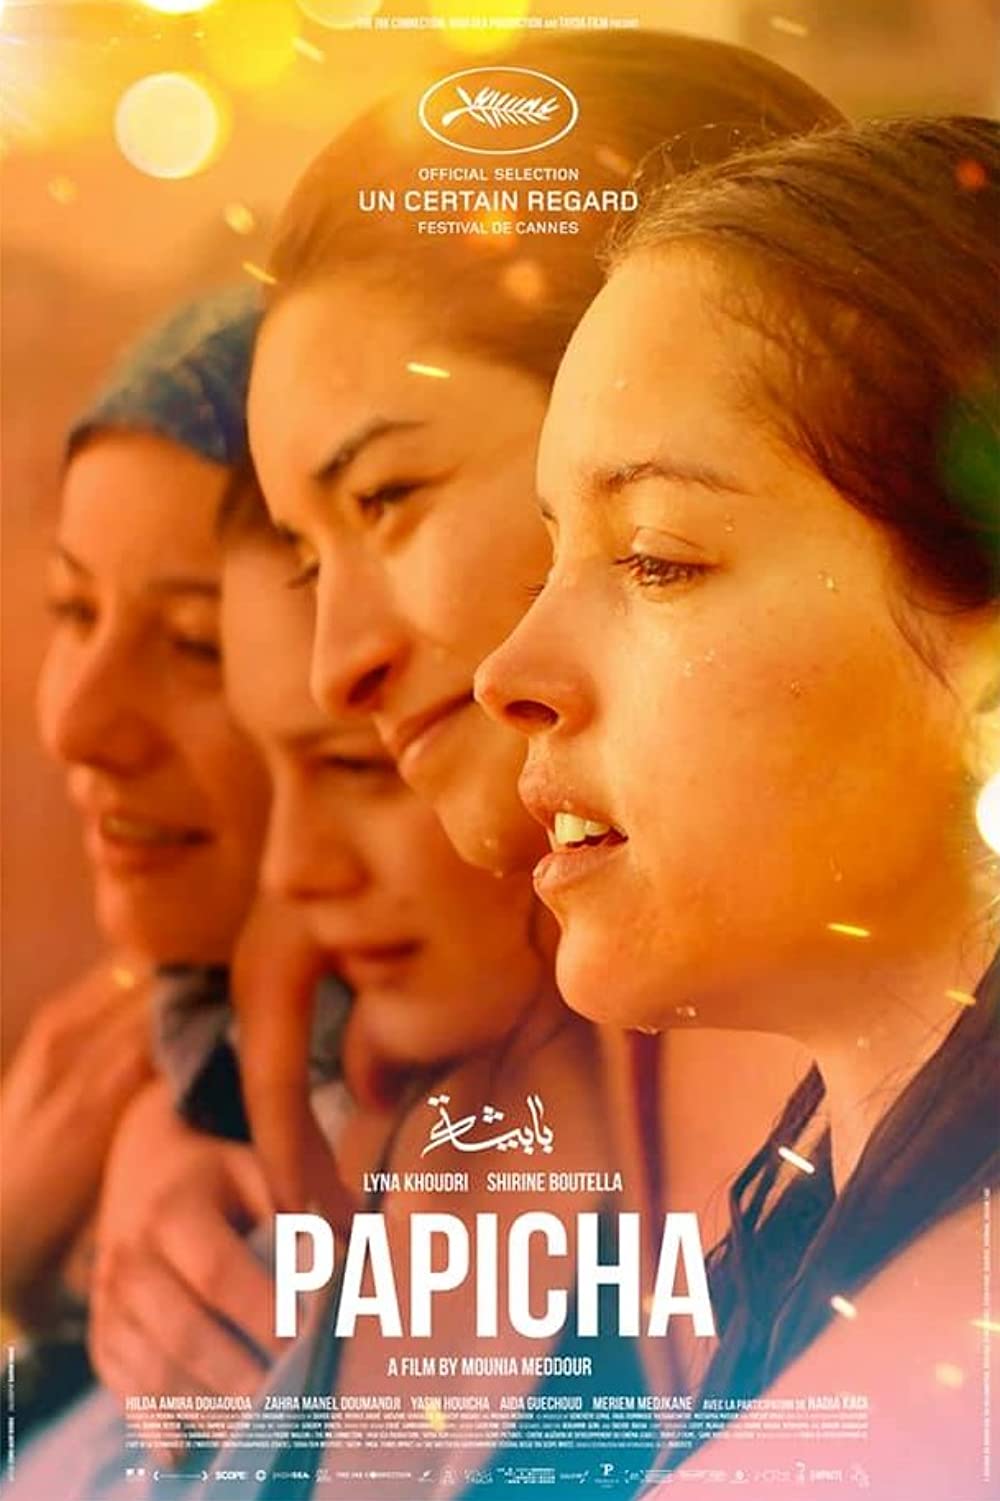 Filmbeschreibung zu Papicha (OV)